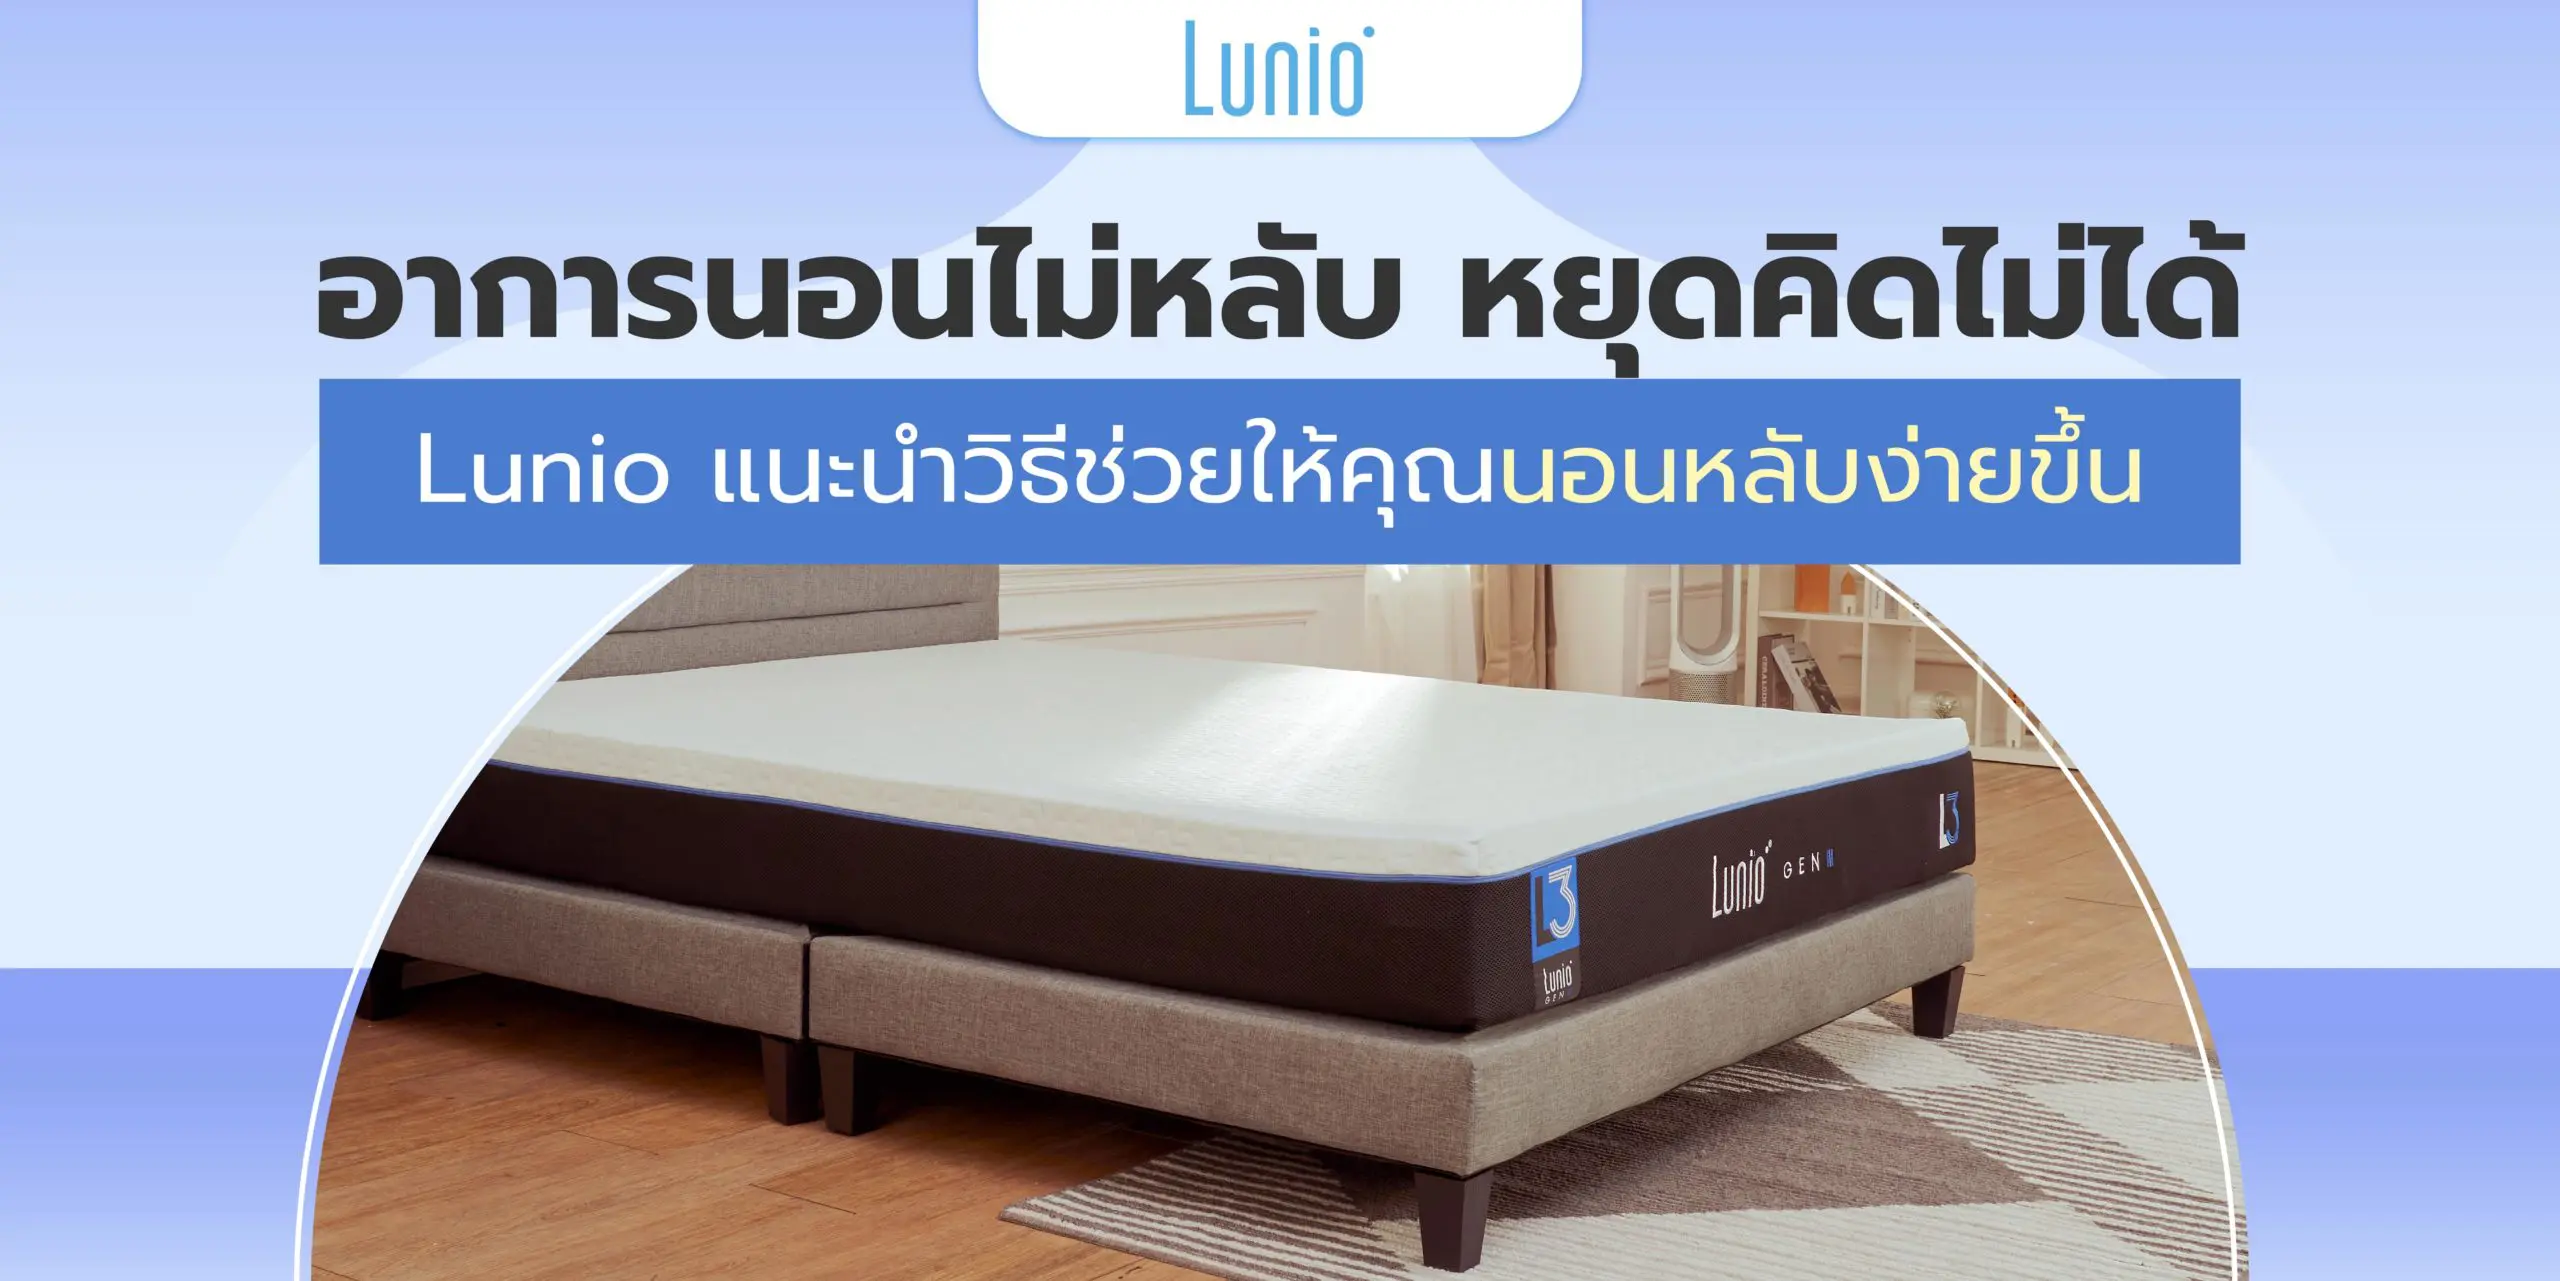 อาการนอนไม่หลับ หยุดคิดไม่ได้ Lunio แนะนำวิธีช่วยให้คุณนอนหลับง่ายขึ้น